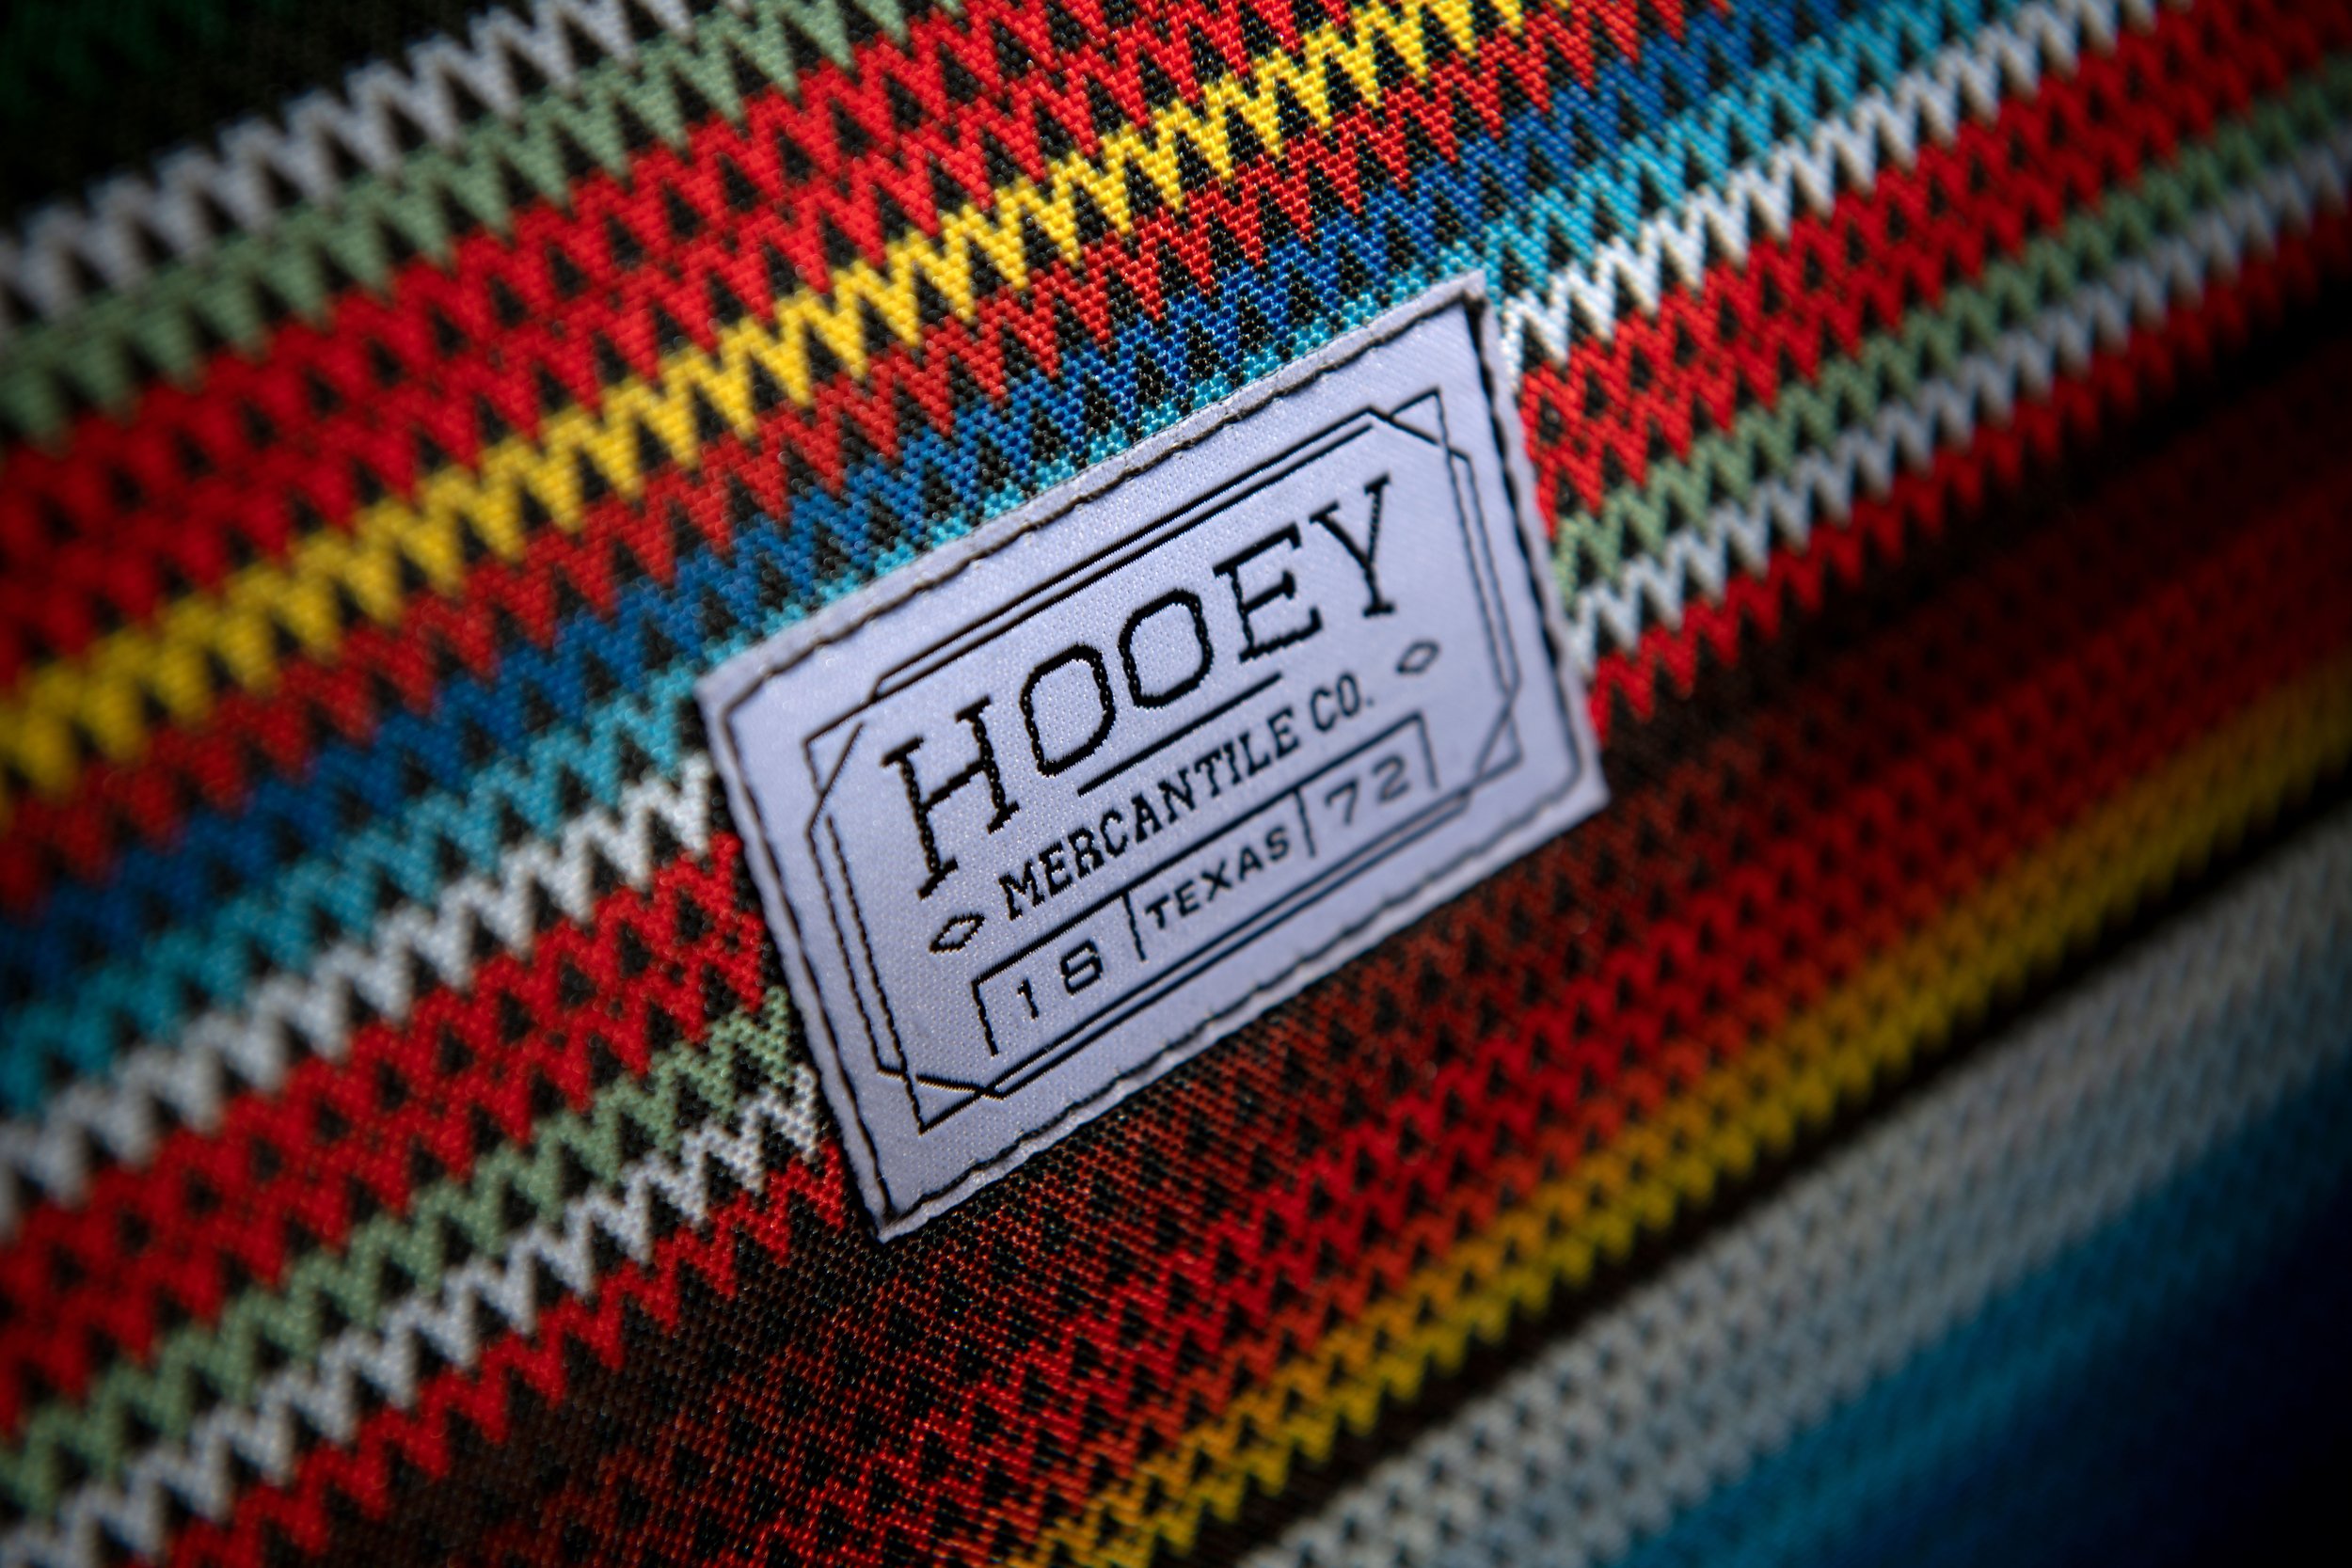 hooey_logo_detail_5.jpg